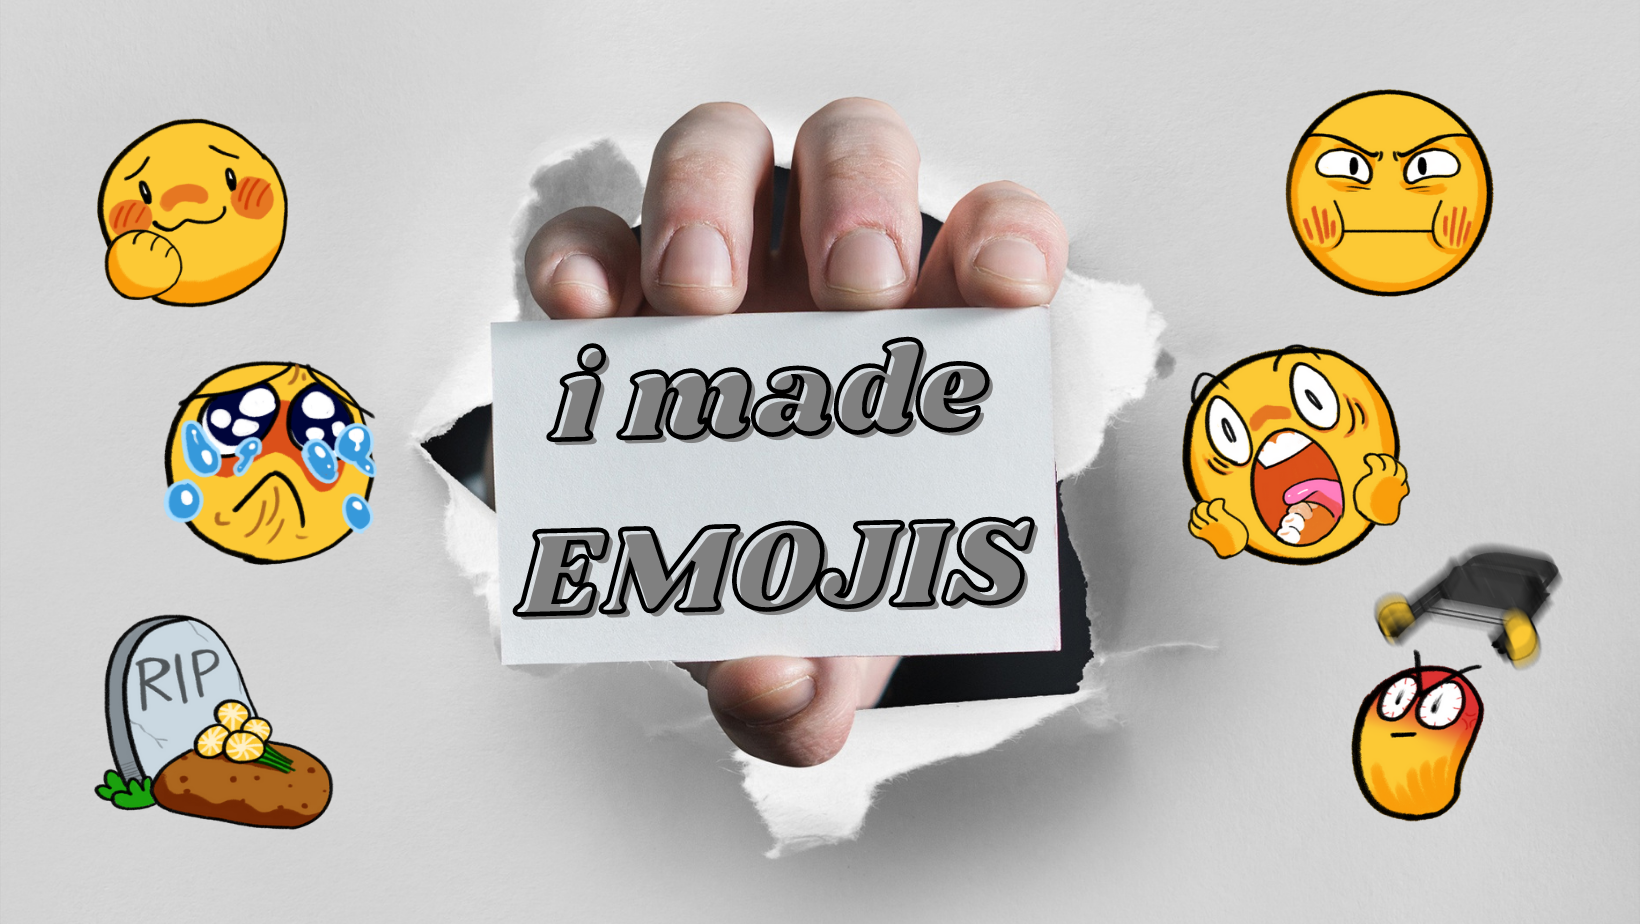 I Made Emojis